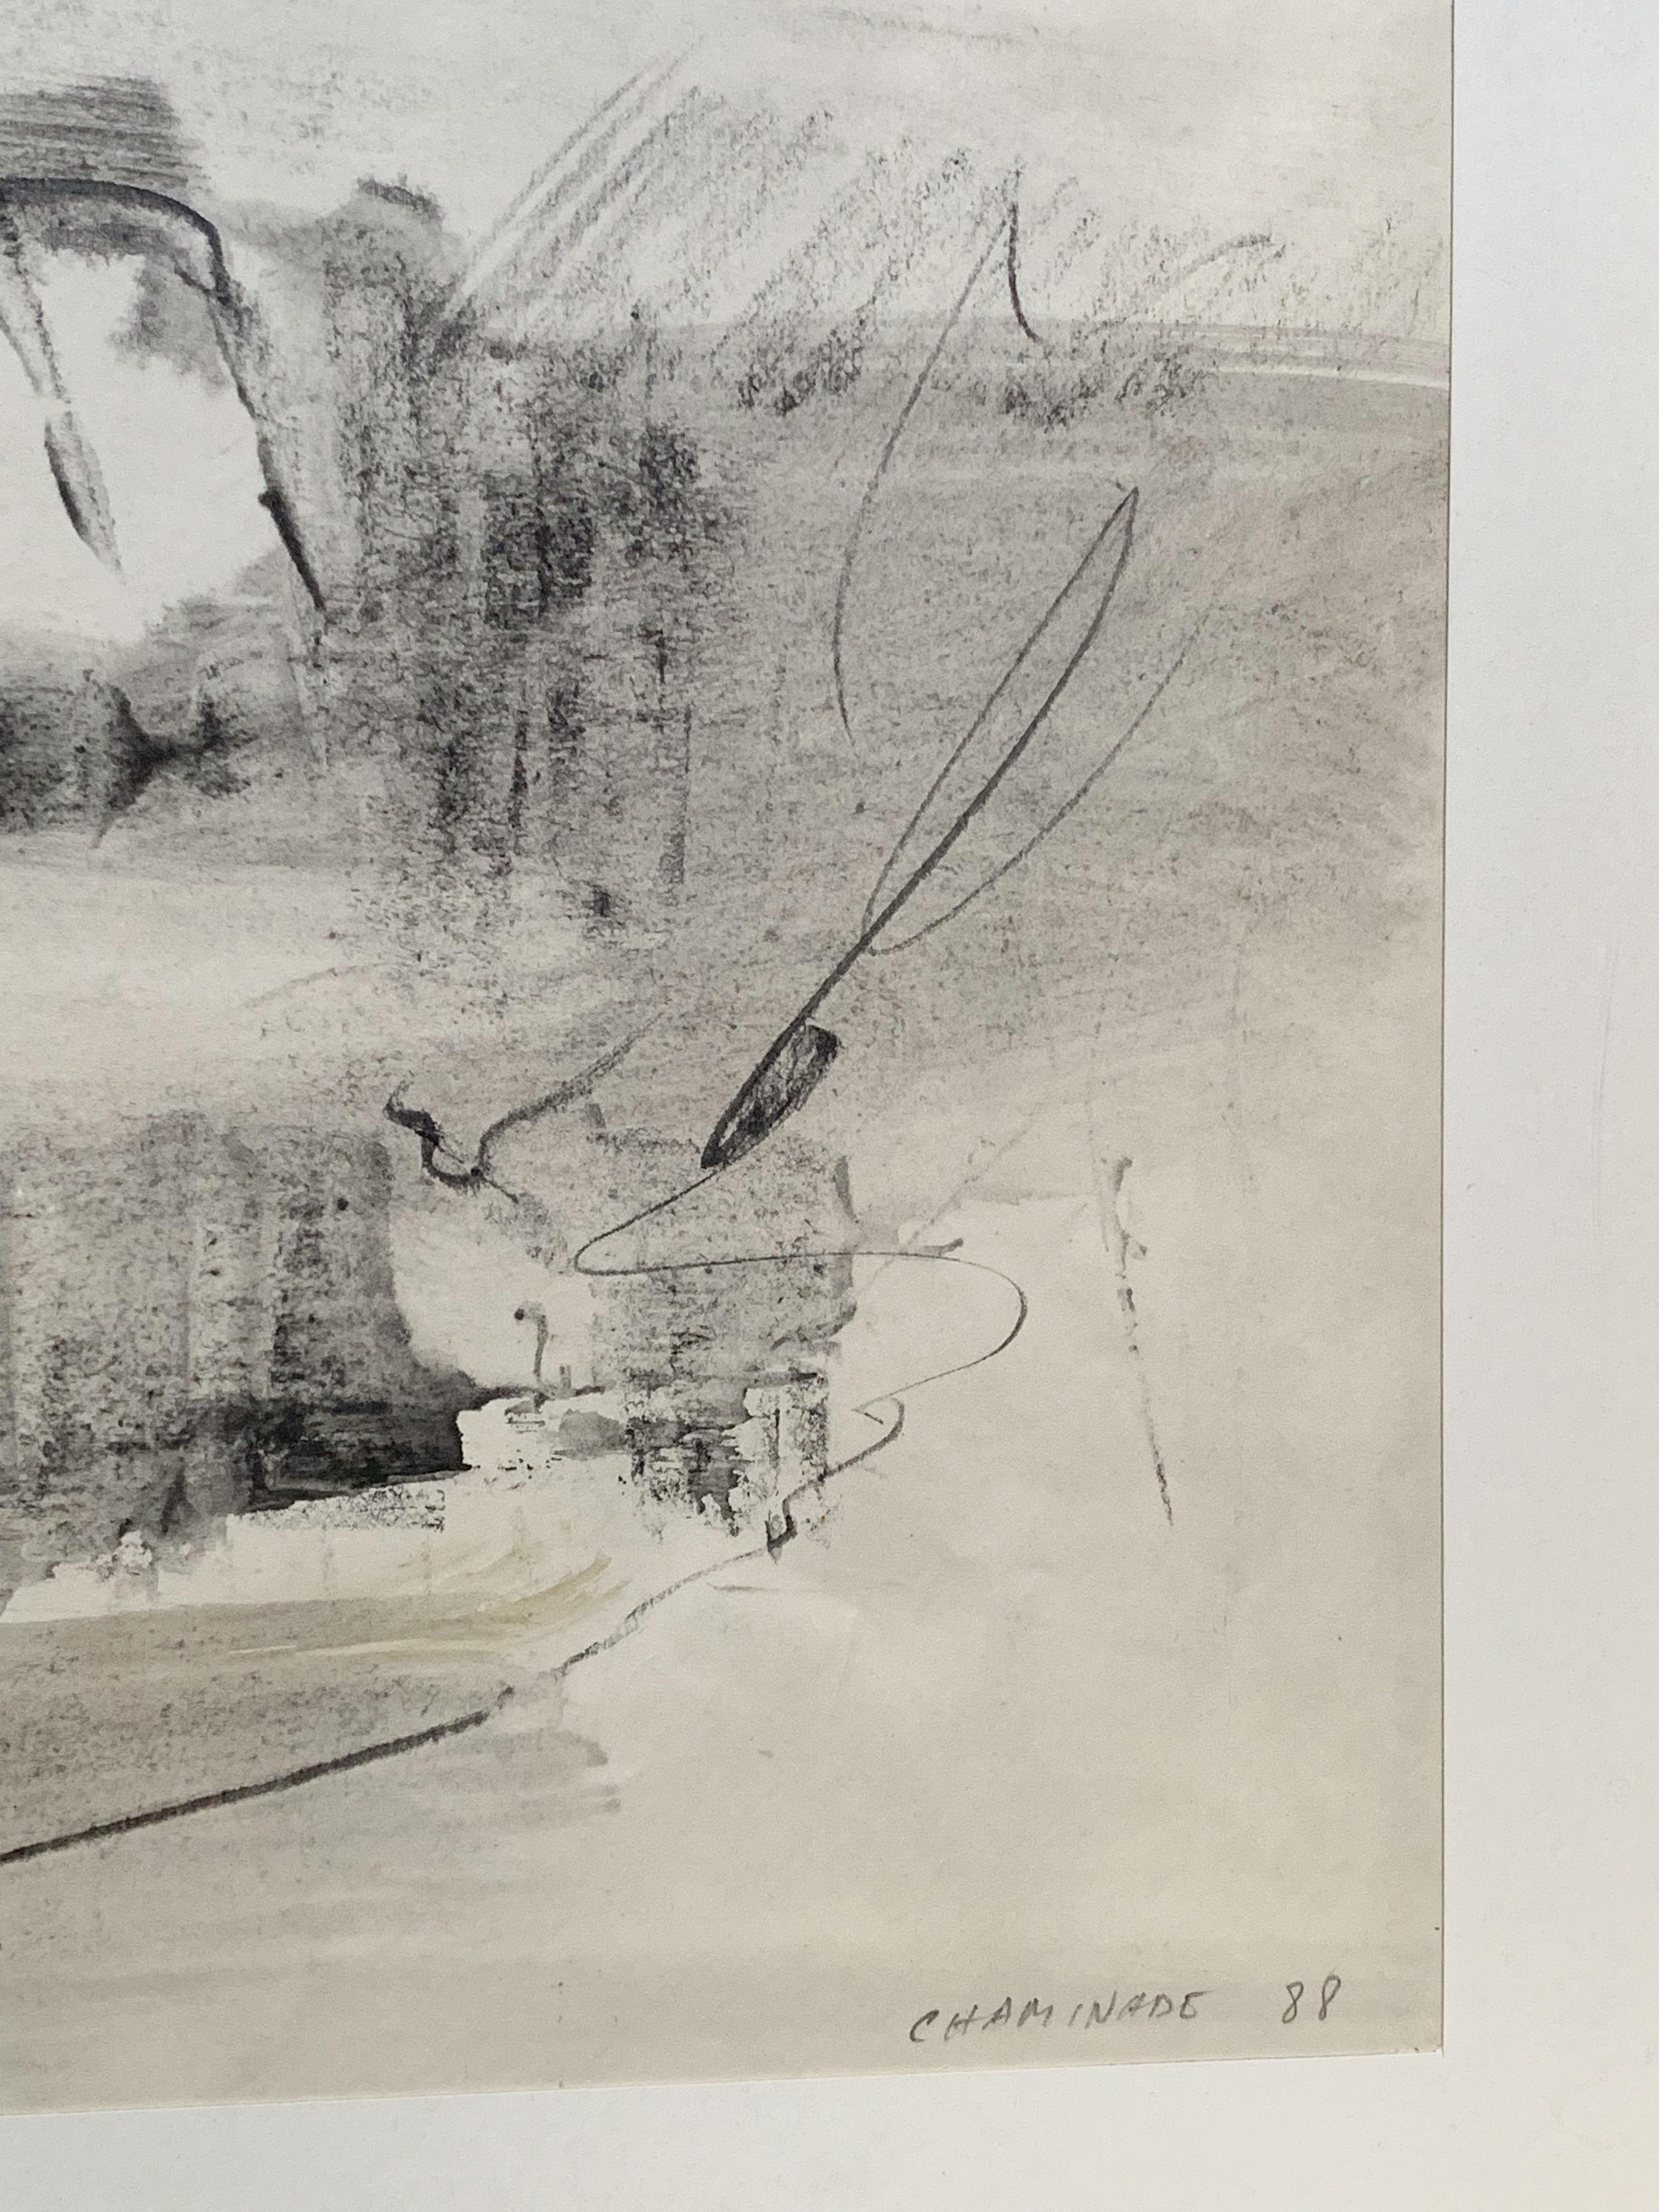 Albert CHAMINADE (1923-2010)
Abstrakte Komposition, 1988
Kohle und lavierte Tinte auf Papier
Signiert und datiert 